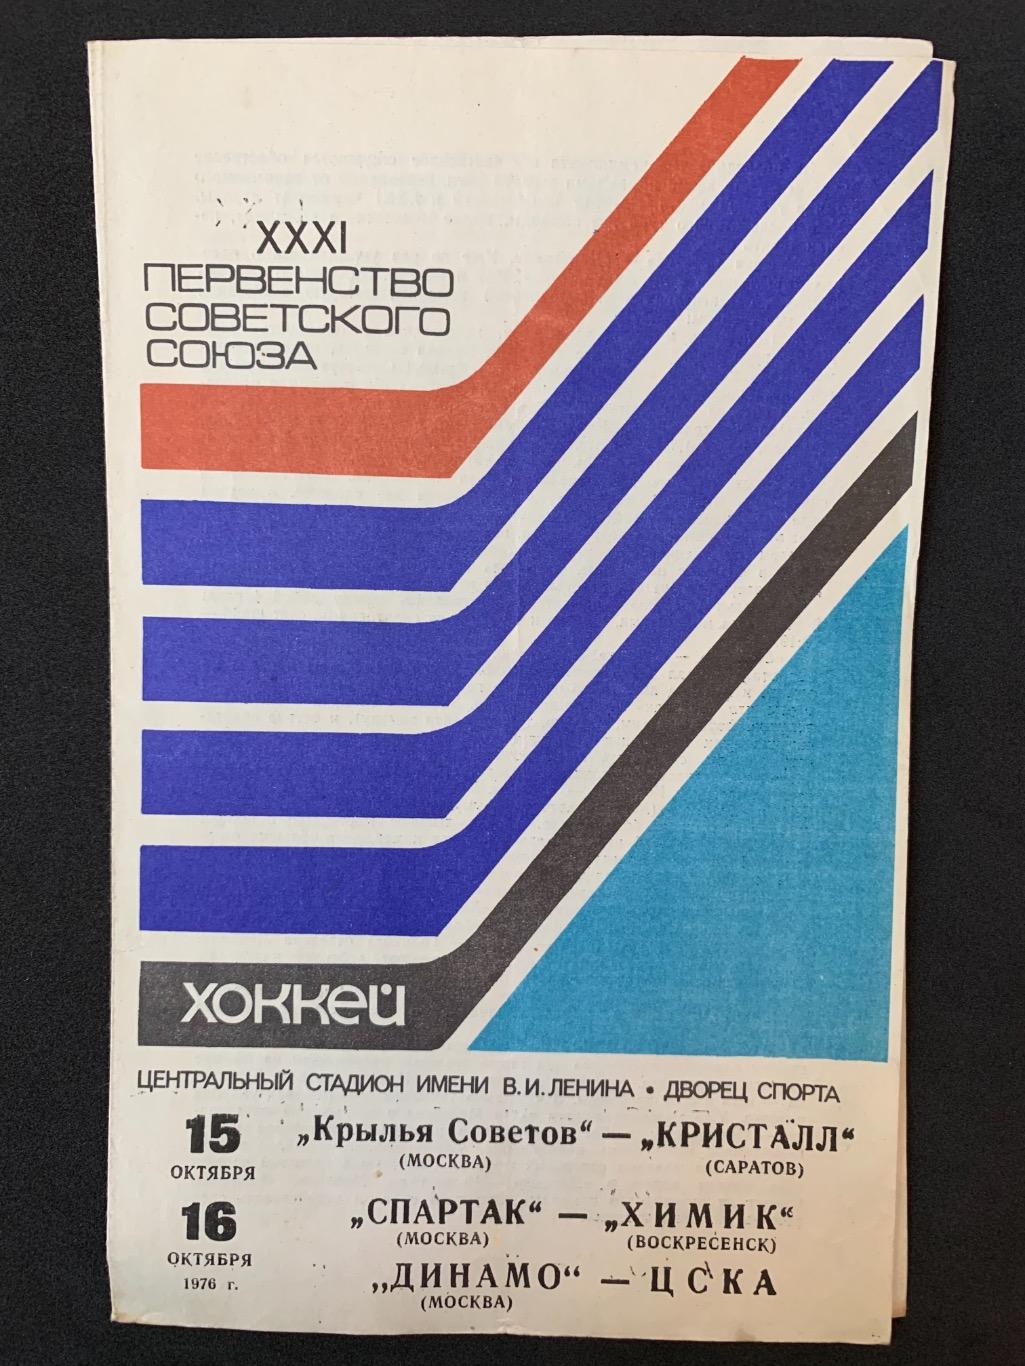 Крылья Советов - Кристалл / Спартак - Химик / Динамо - ЦСКА 15-16.10.1976